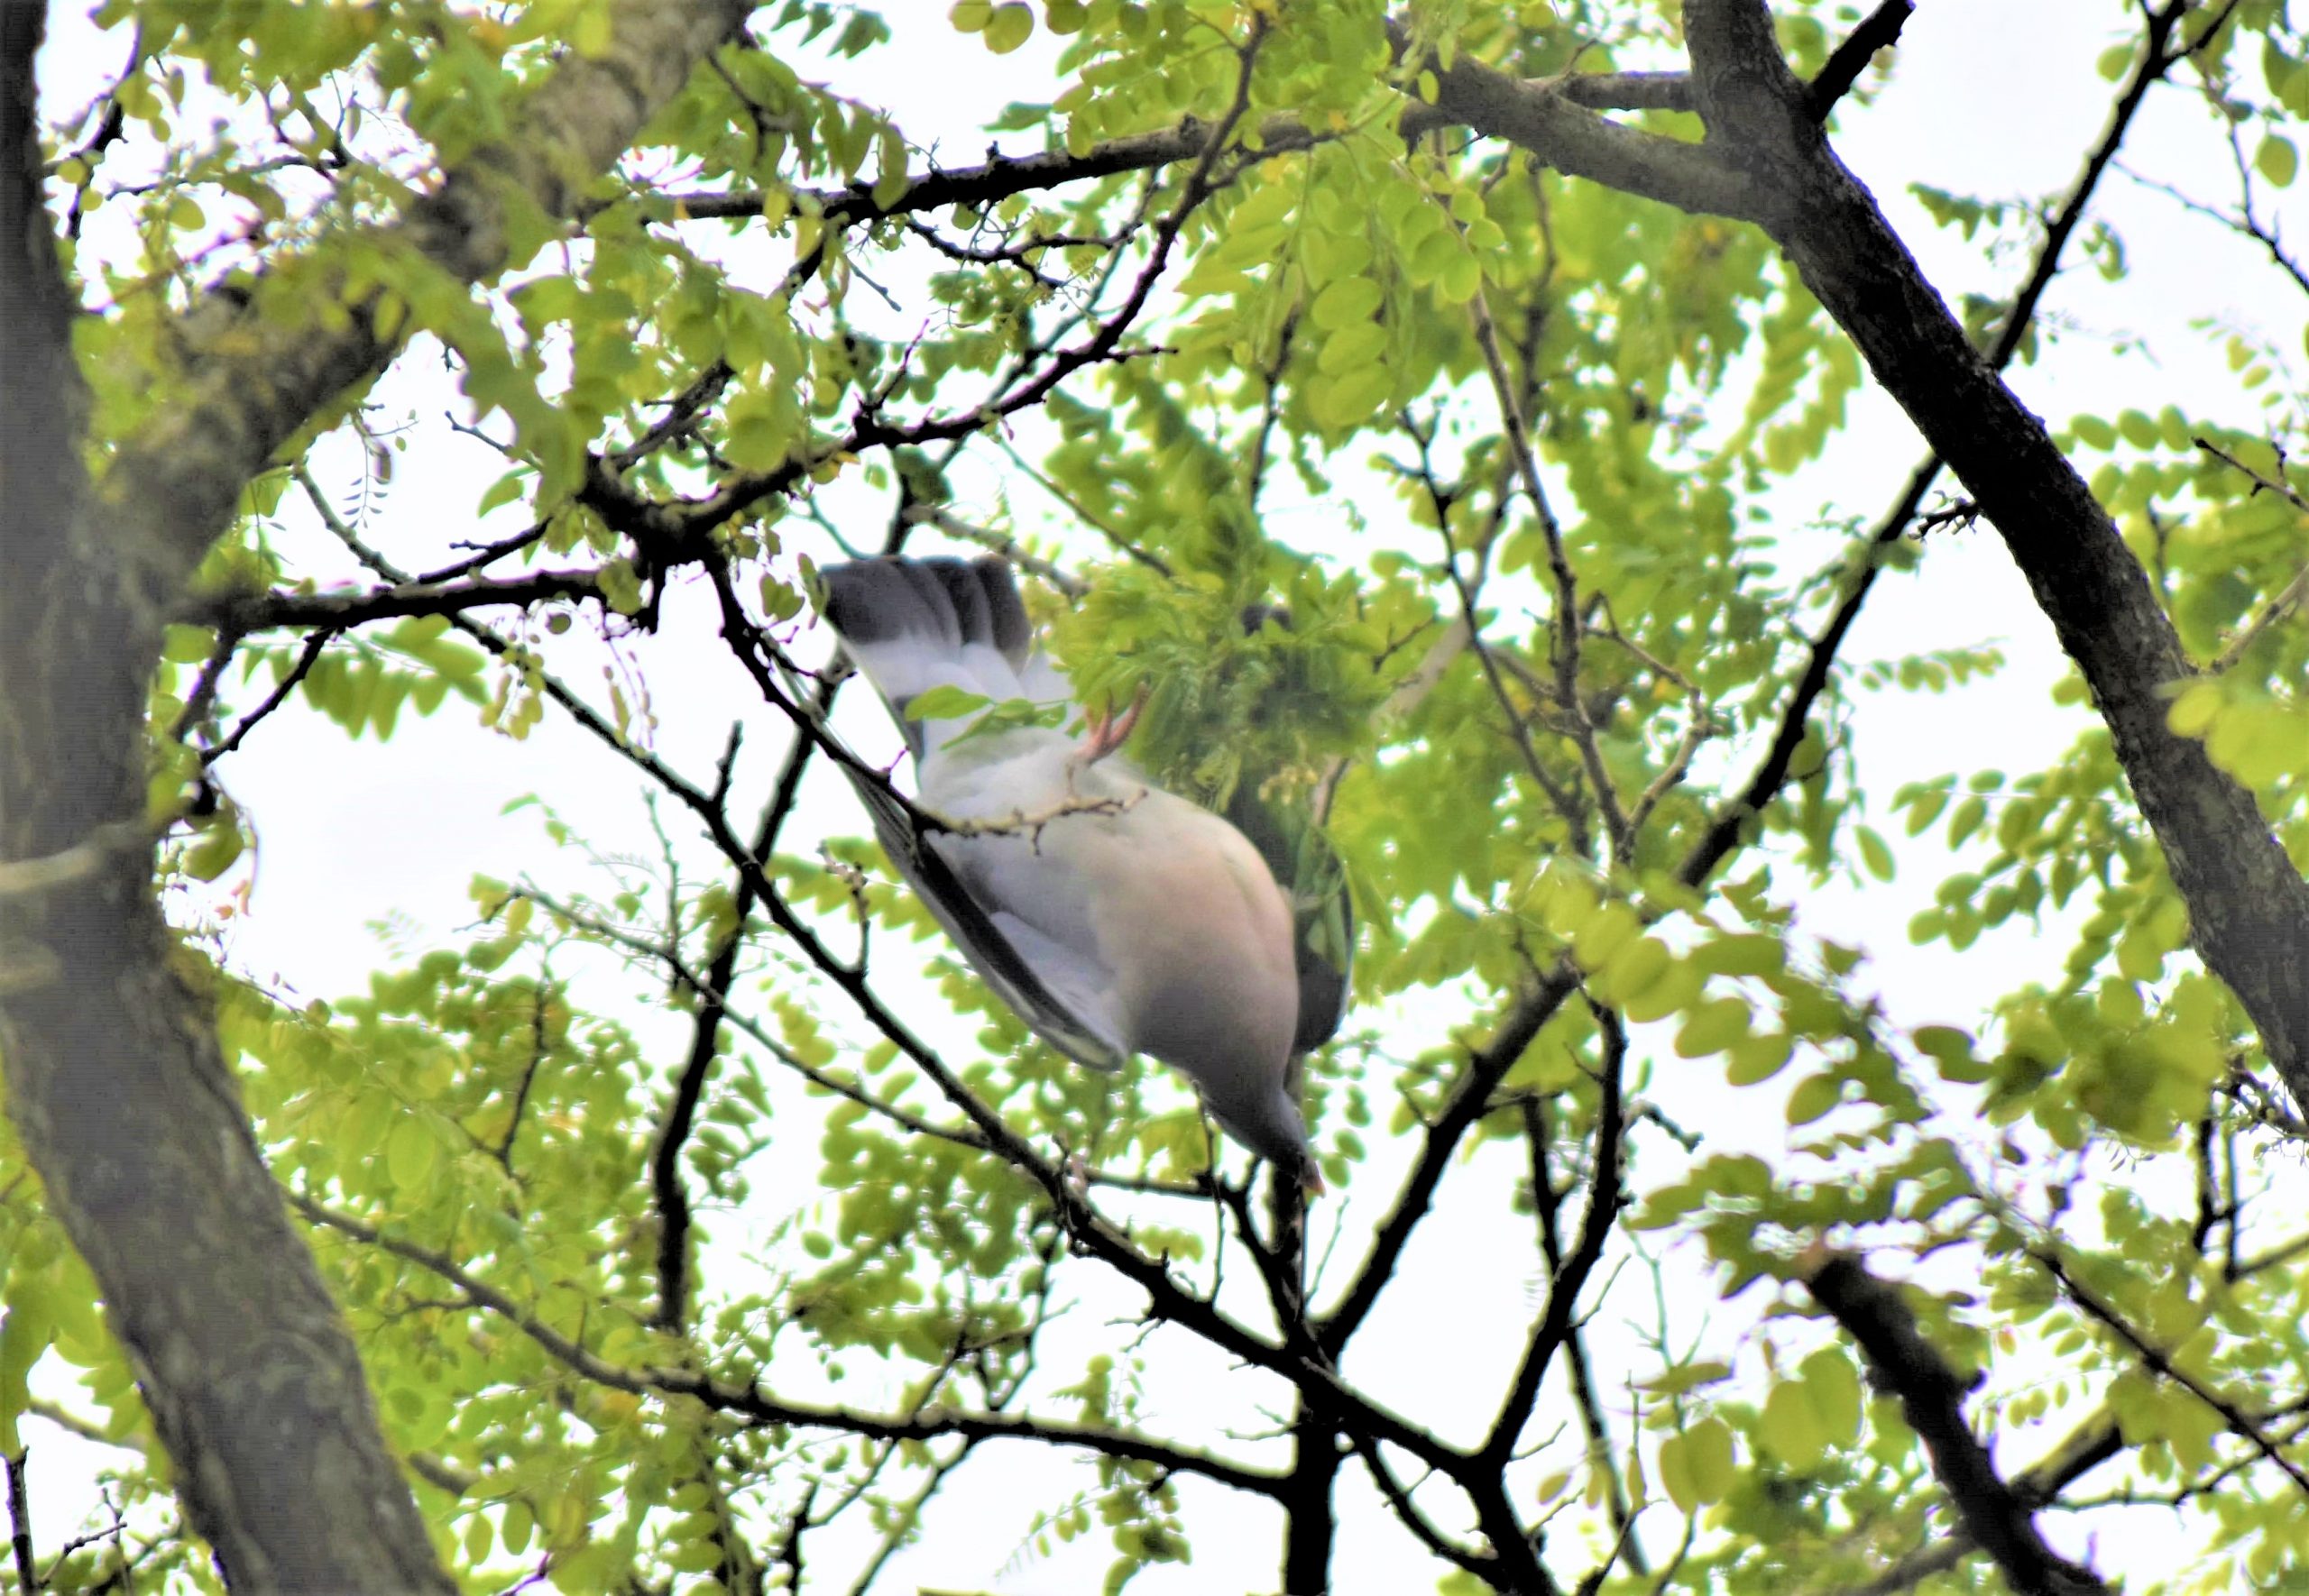 In touw verstrikte duif aan tak uit boom gered